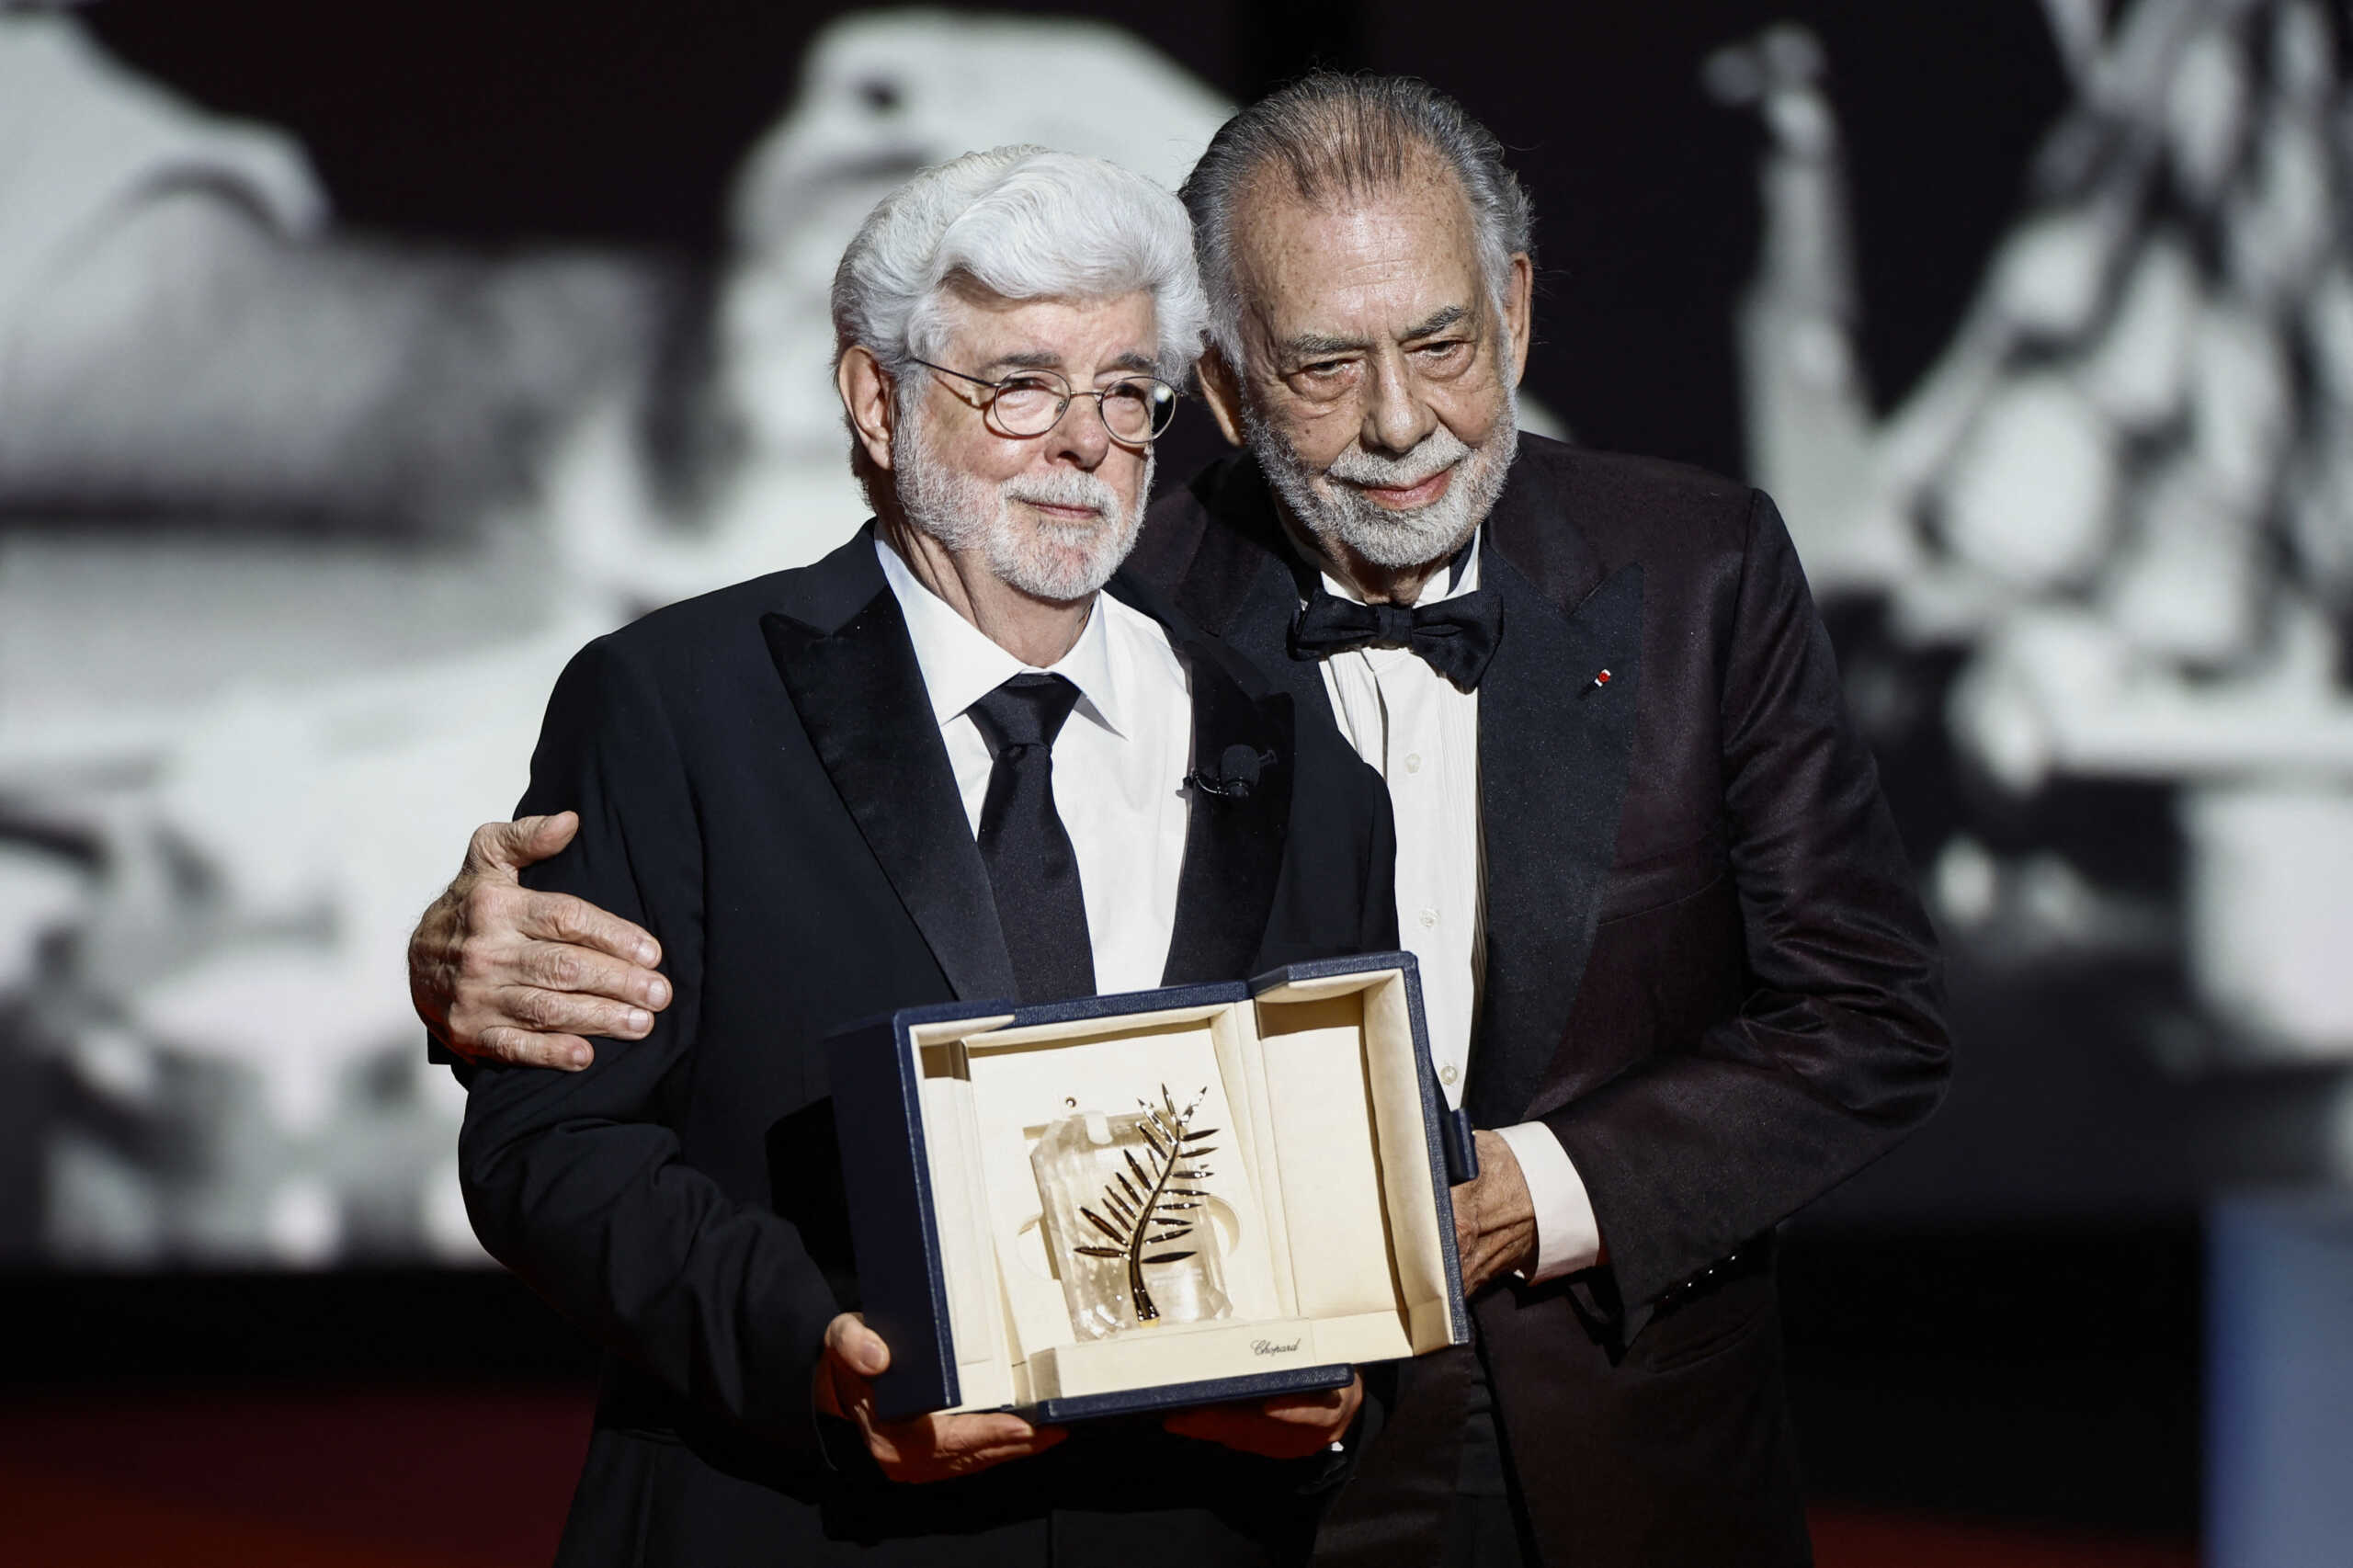 Ο Τζορτζ Λούκας έλαβε τιμητικό Χρυσό Φοίνικα στο Φεστιβάλ των Καννών – Το βραβείο του έδωσε ο Φράνσις Φορντ Κόπολα